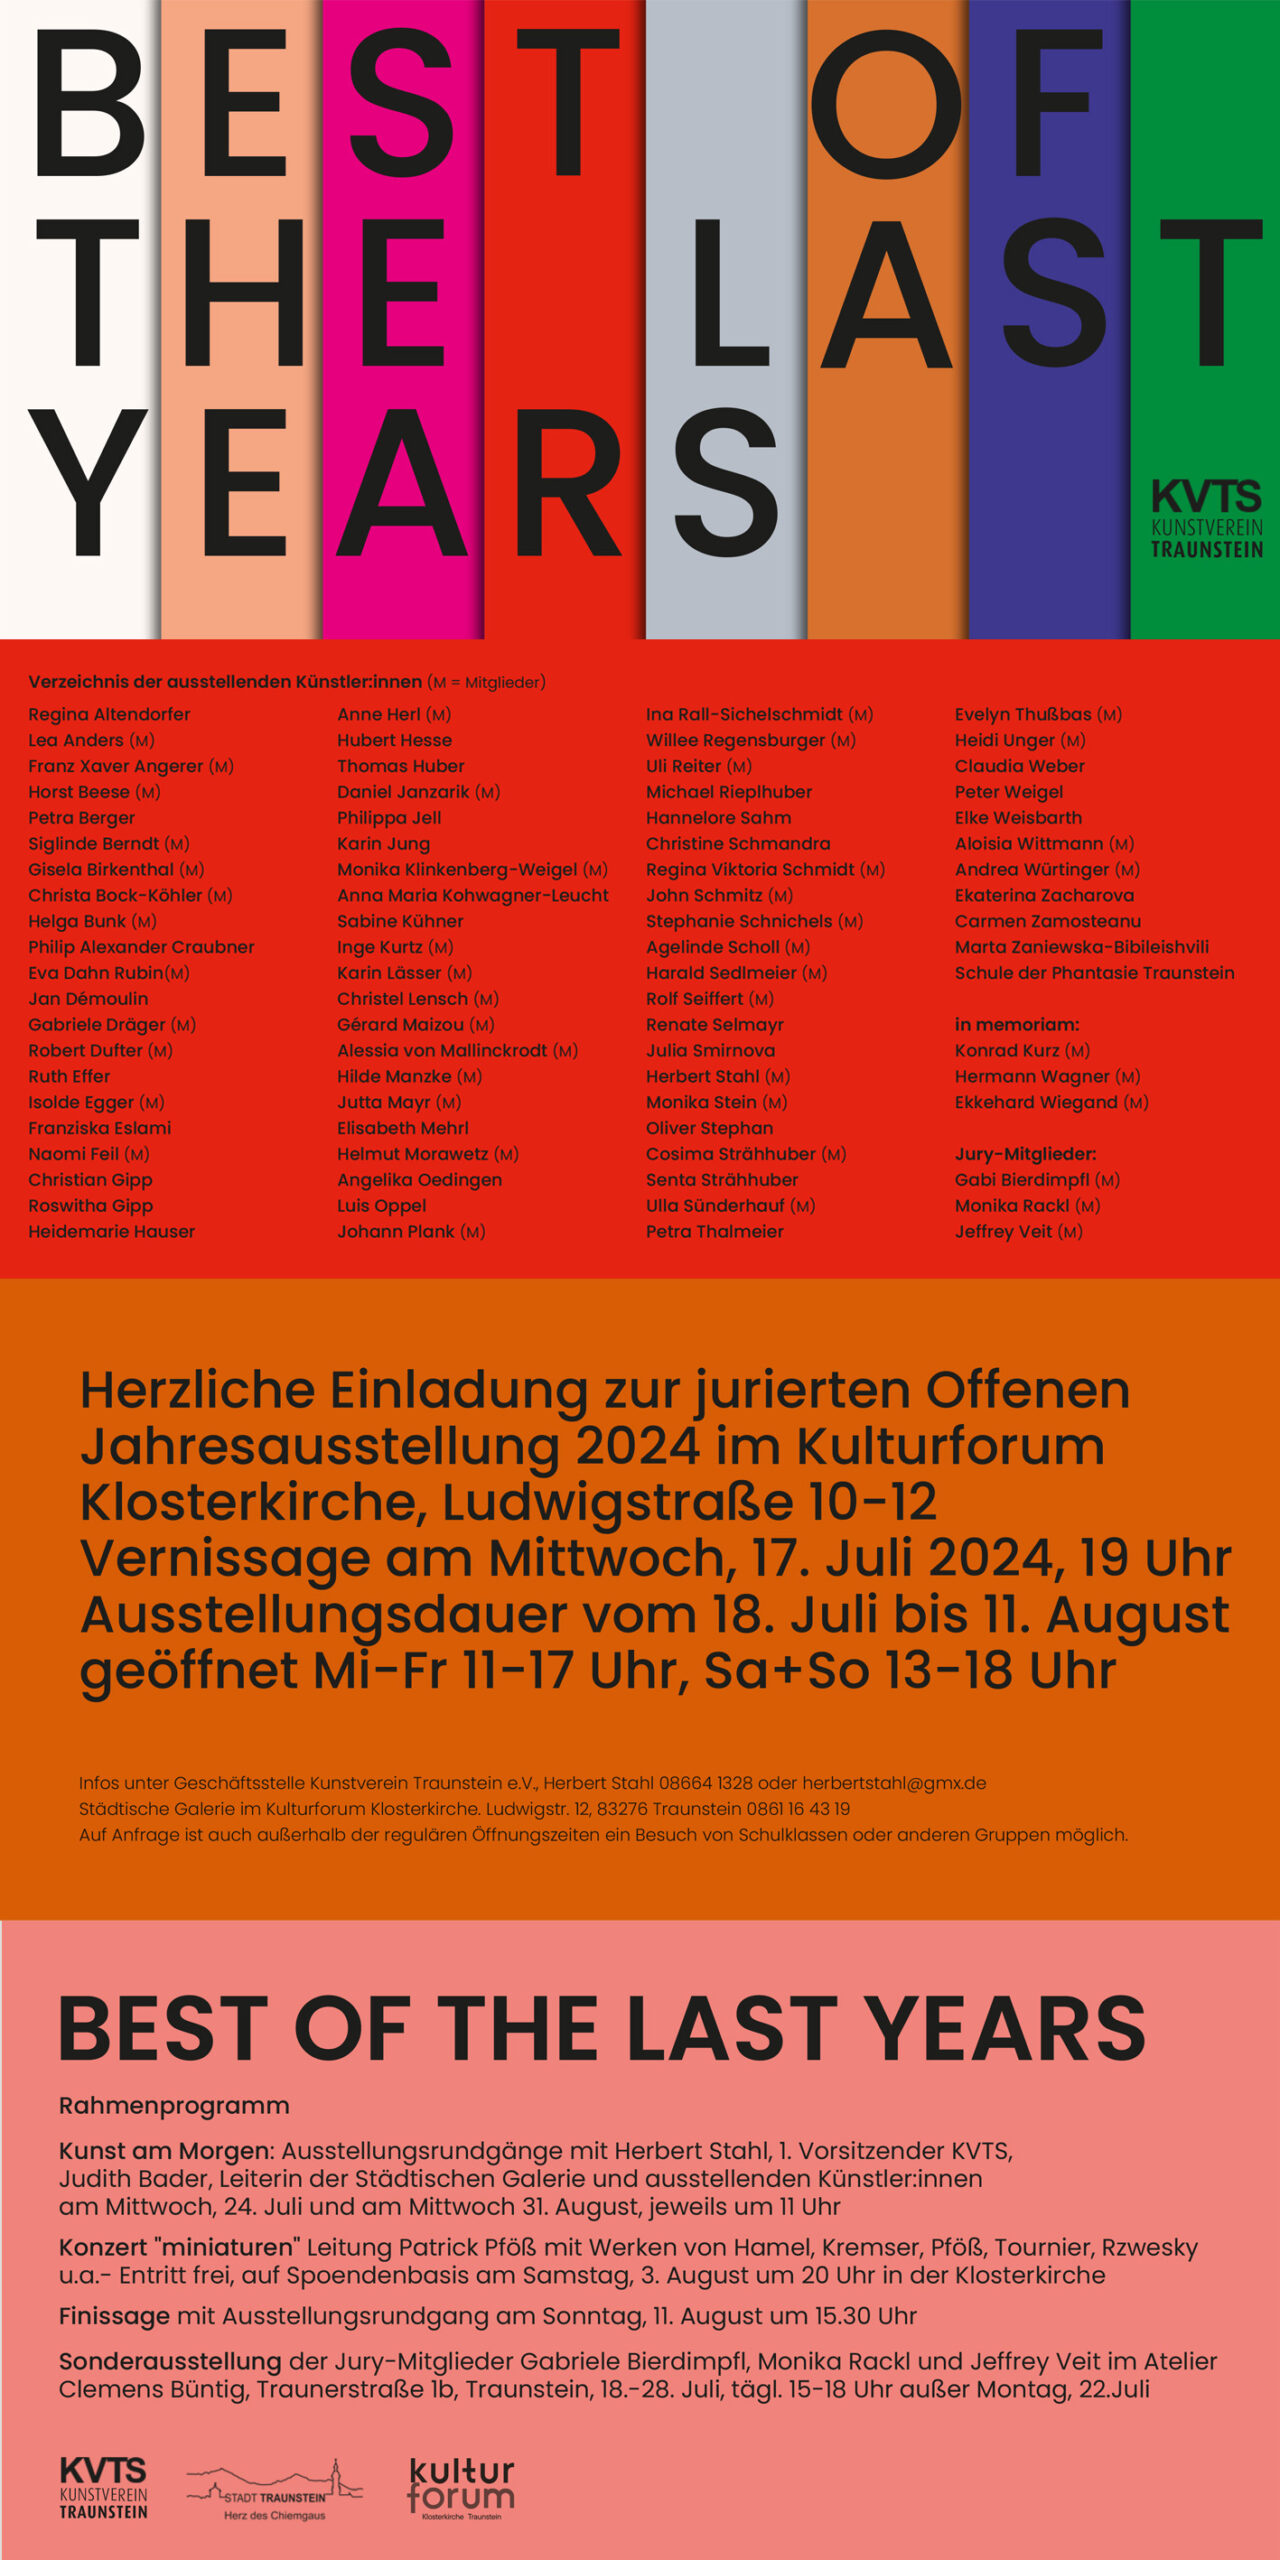 Minimalistischer Einladungsflyer von drei Künstlern zu Kunstausstellung